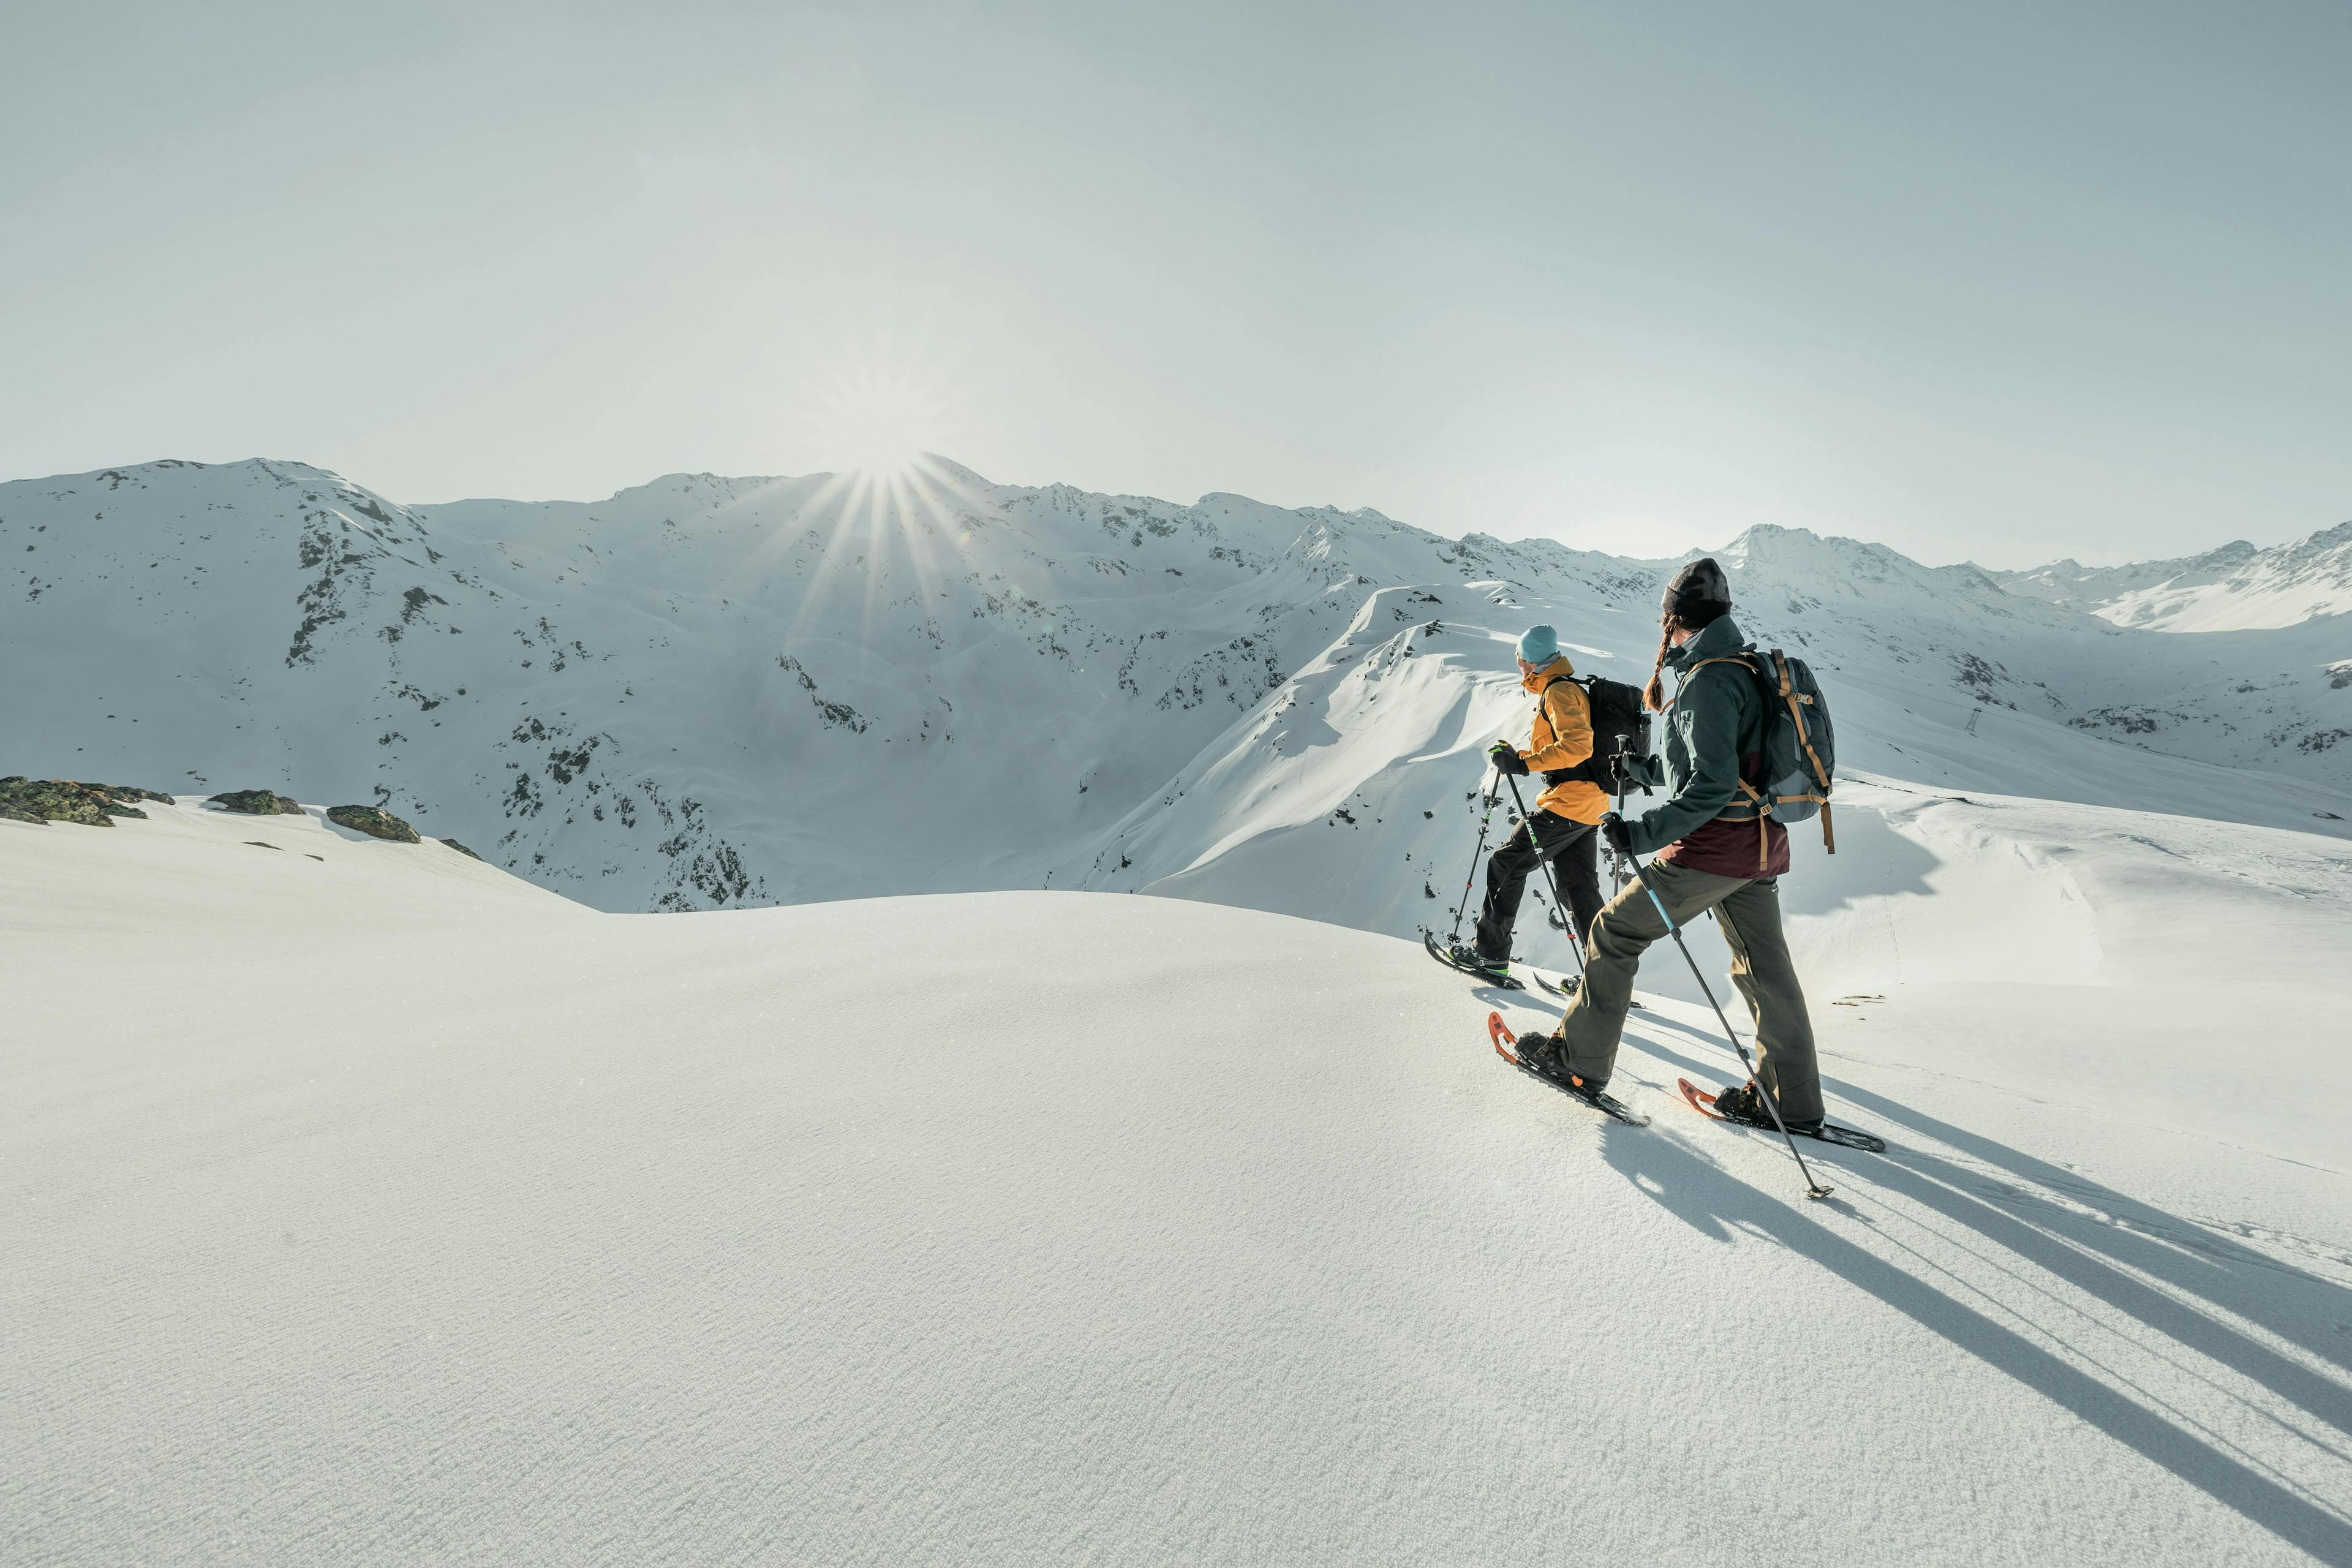 Top 5 Activities to Do in Switzerland this Winter